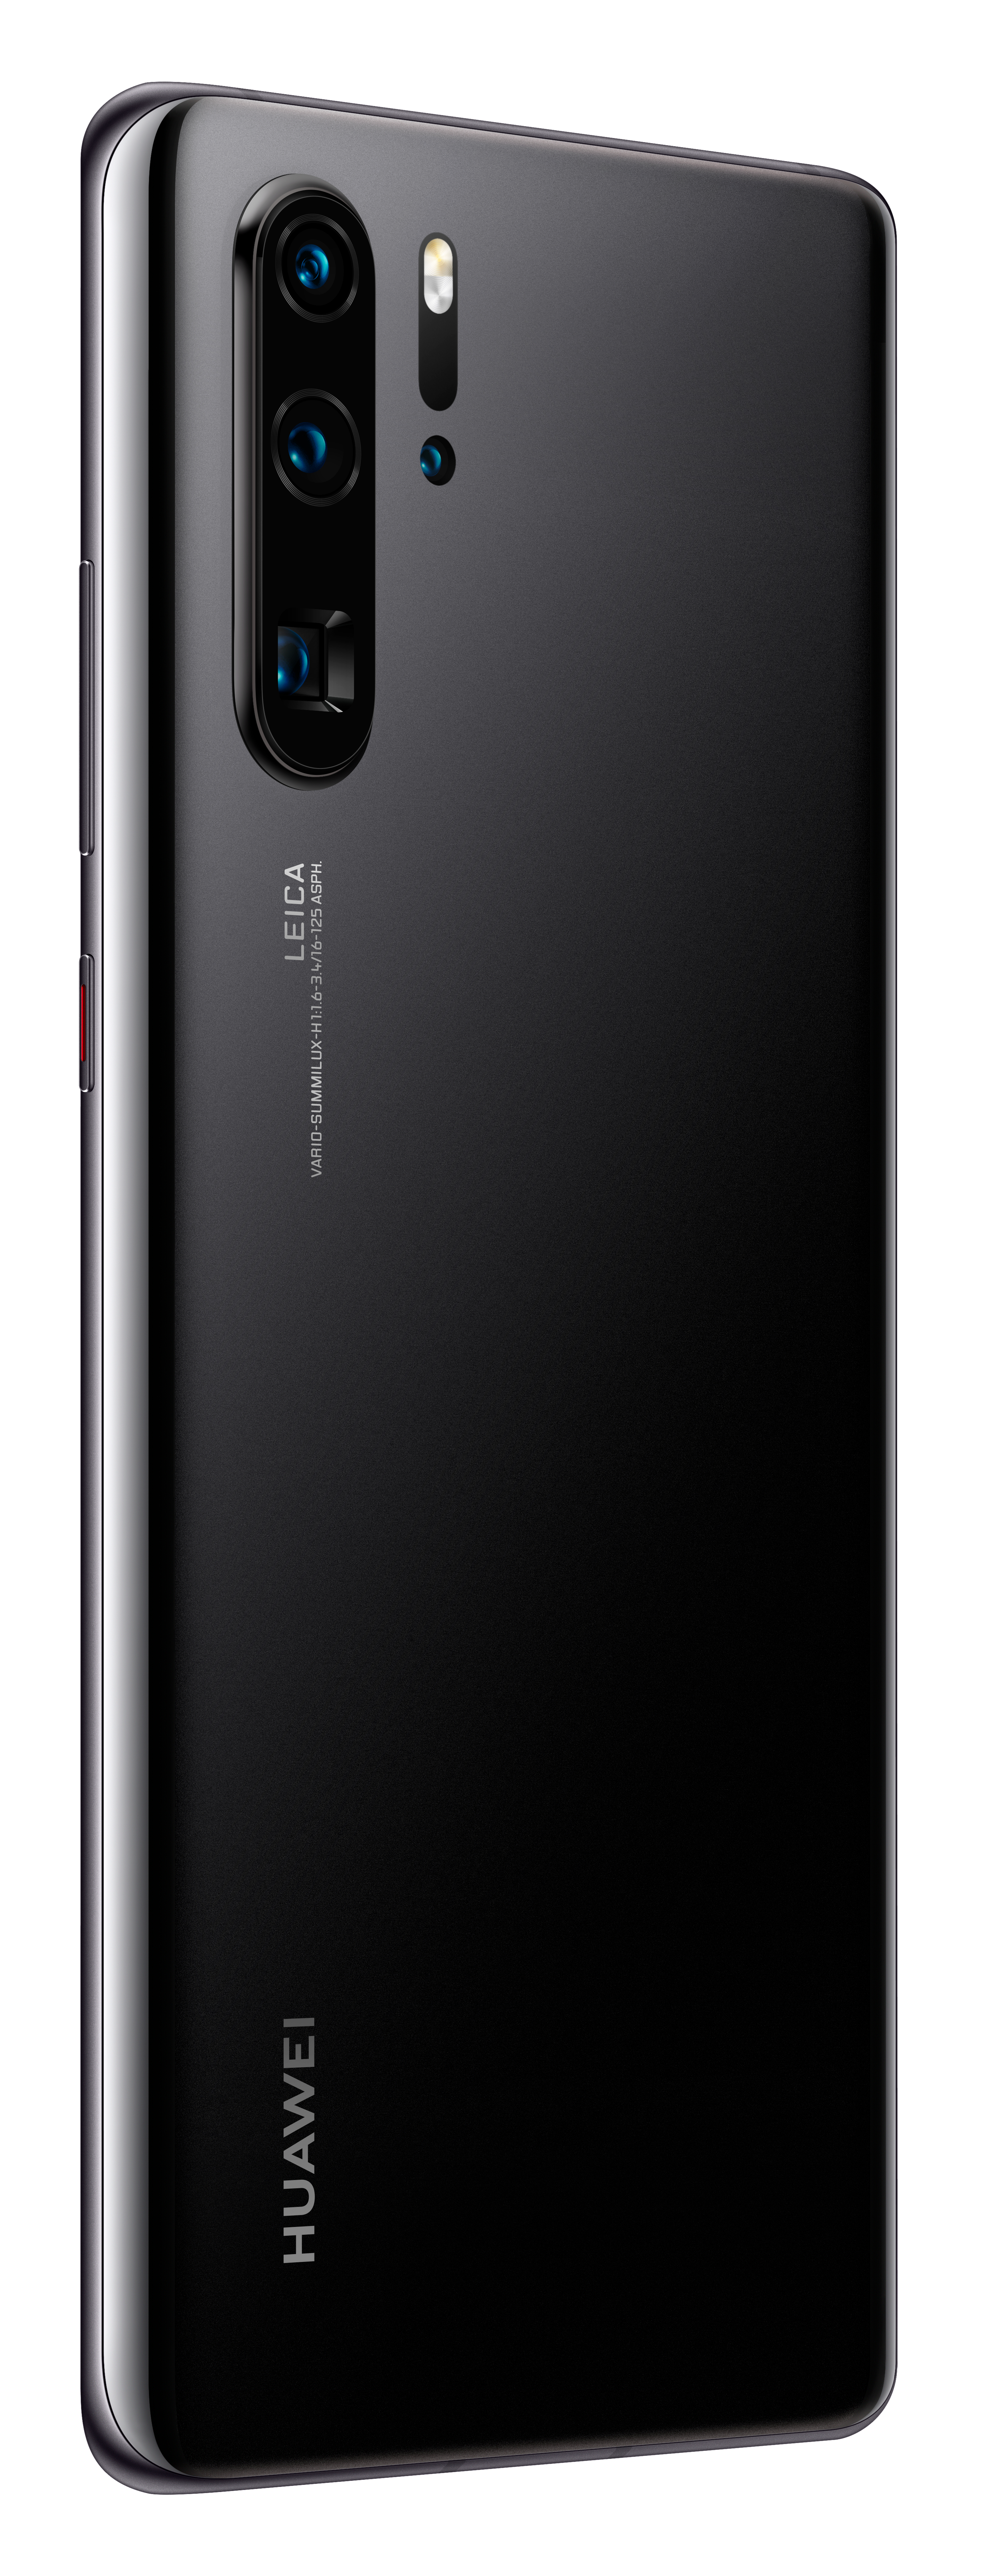 HUAWEI P30 Pro 256 Dual Black GB EDITION SIM NEW